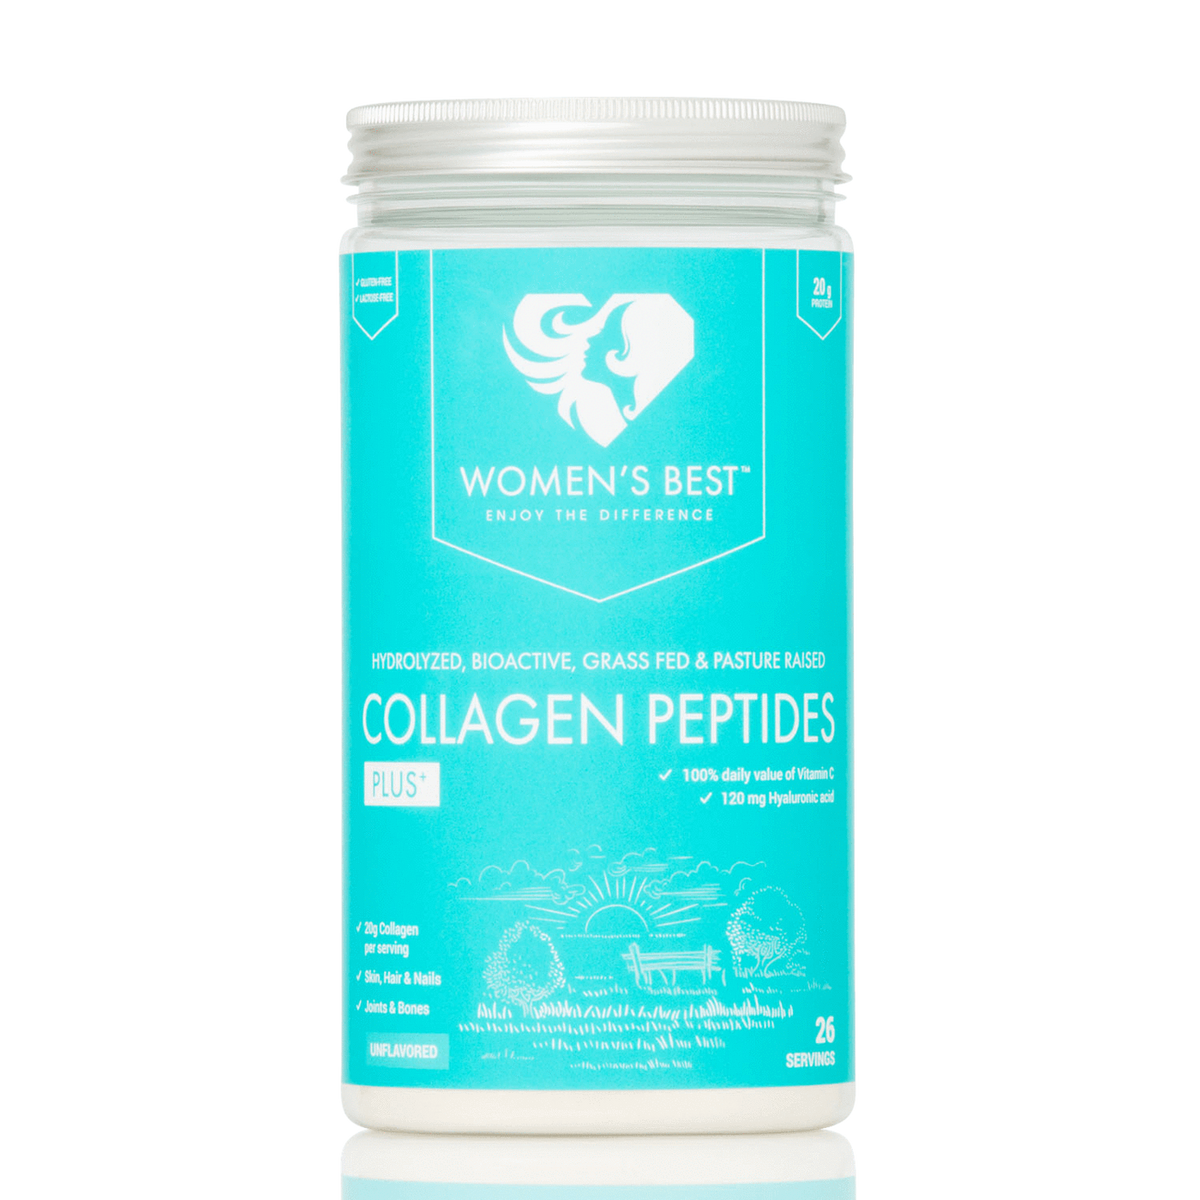 Women's Best Collagen Peptides Plus+